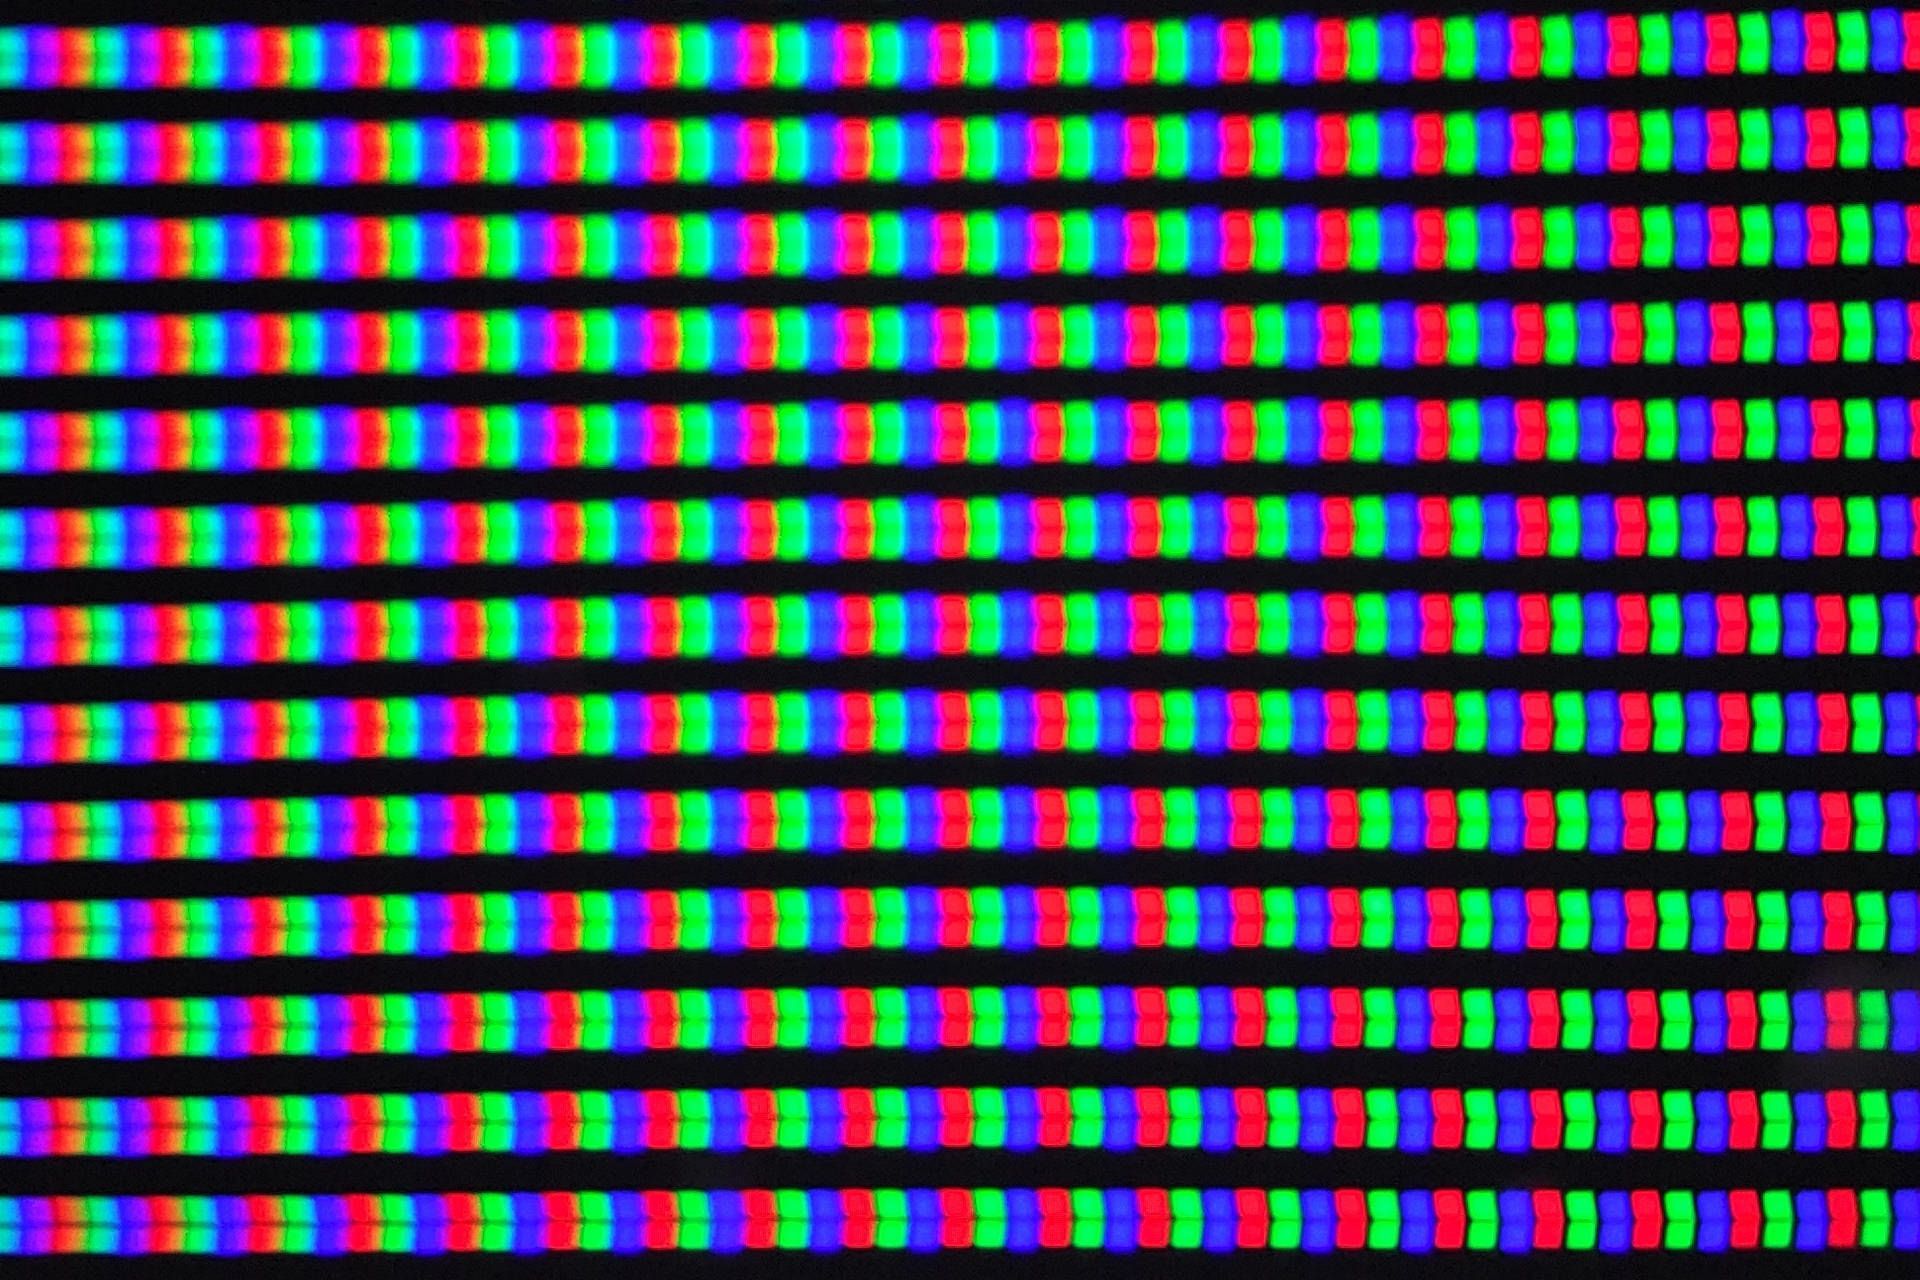 نمای نزدیک پیکسل ها در نمایشگر ثبت شده توسط دوربین میکروسکوپی اوپو فایند ایکس 3 پرو